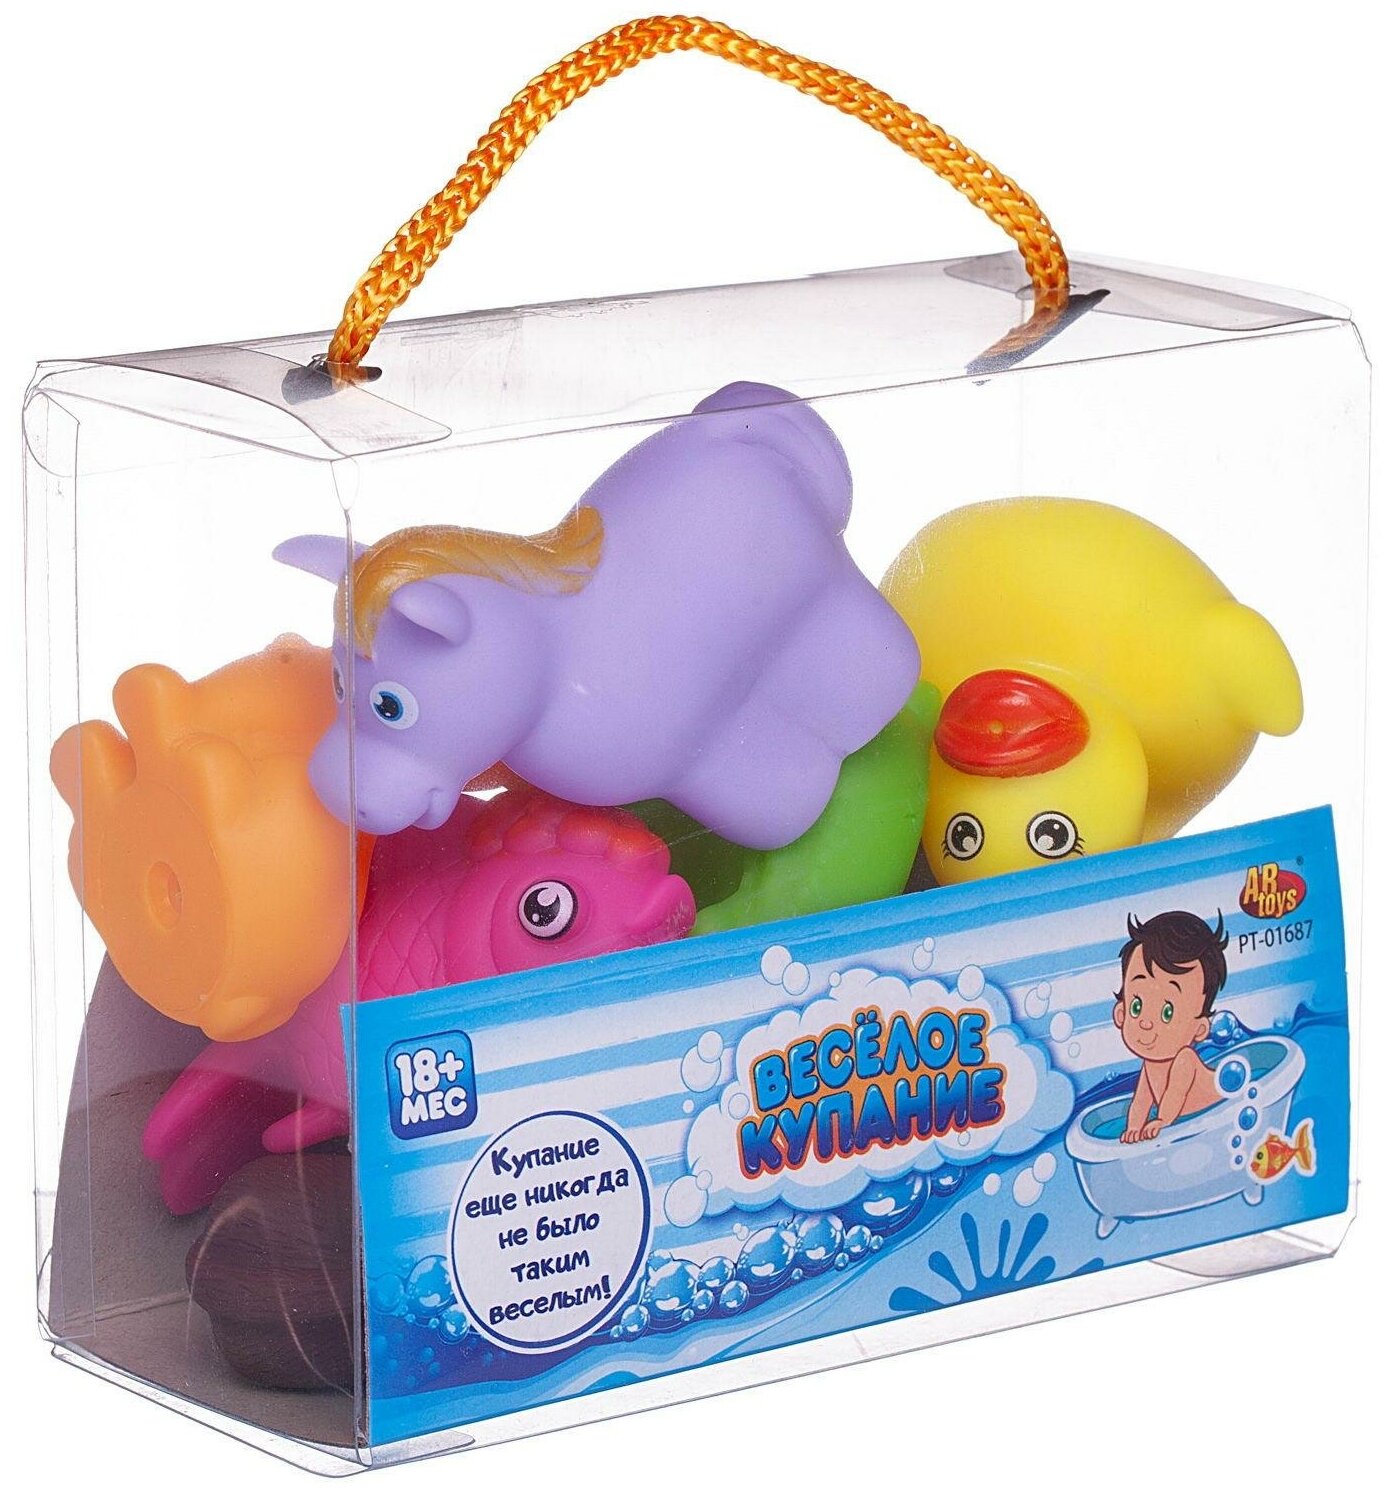 Набор резиновых игрушек для ванной Abtoys Веселое купание 8 предметов (набор 3), в сумке PT-01687